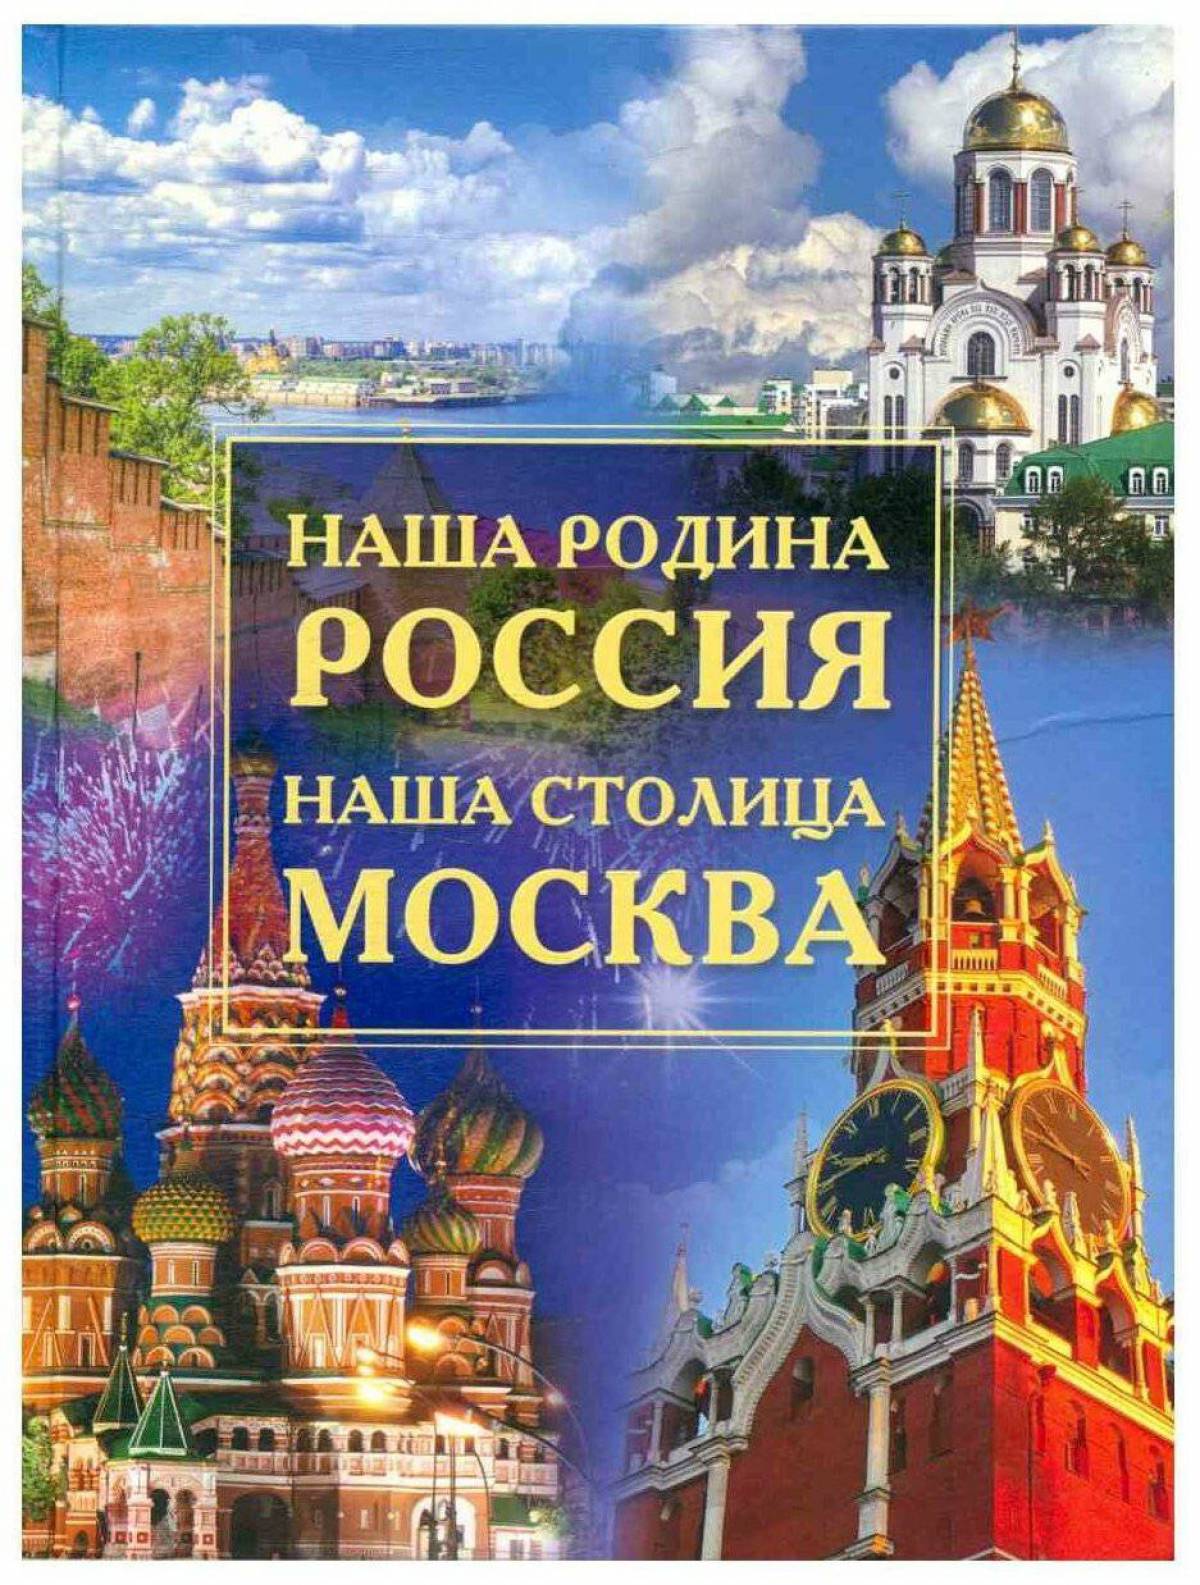 Москва столица россии для детей #21